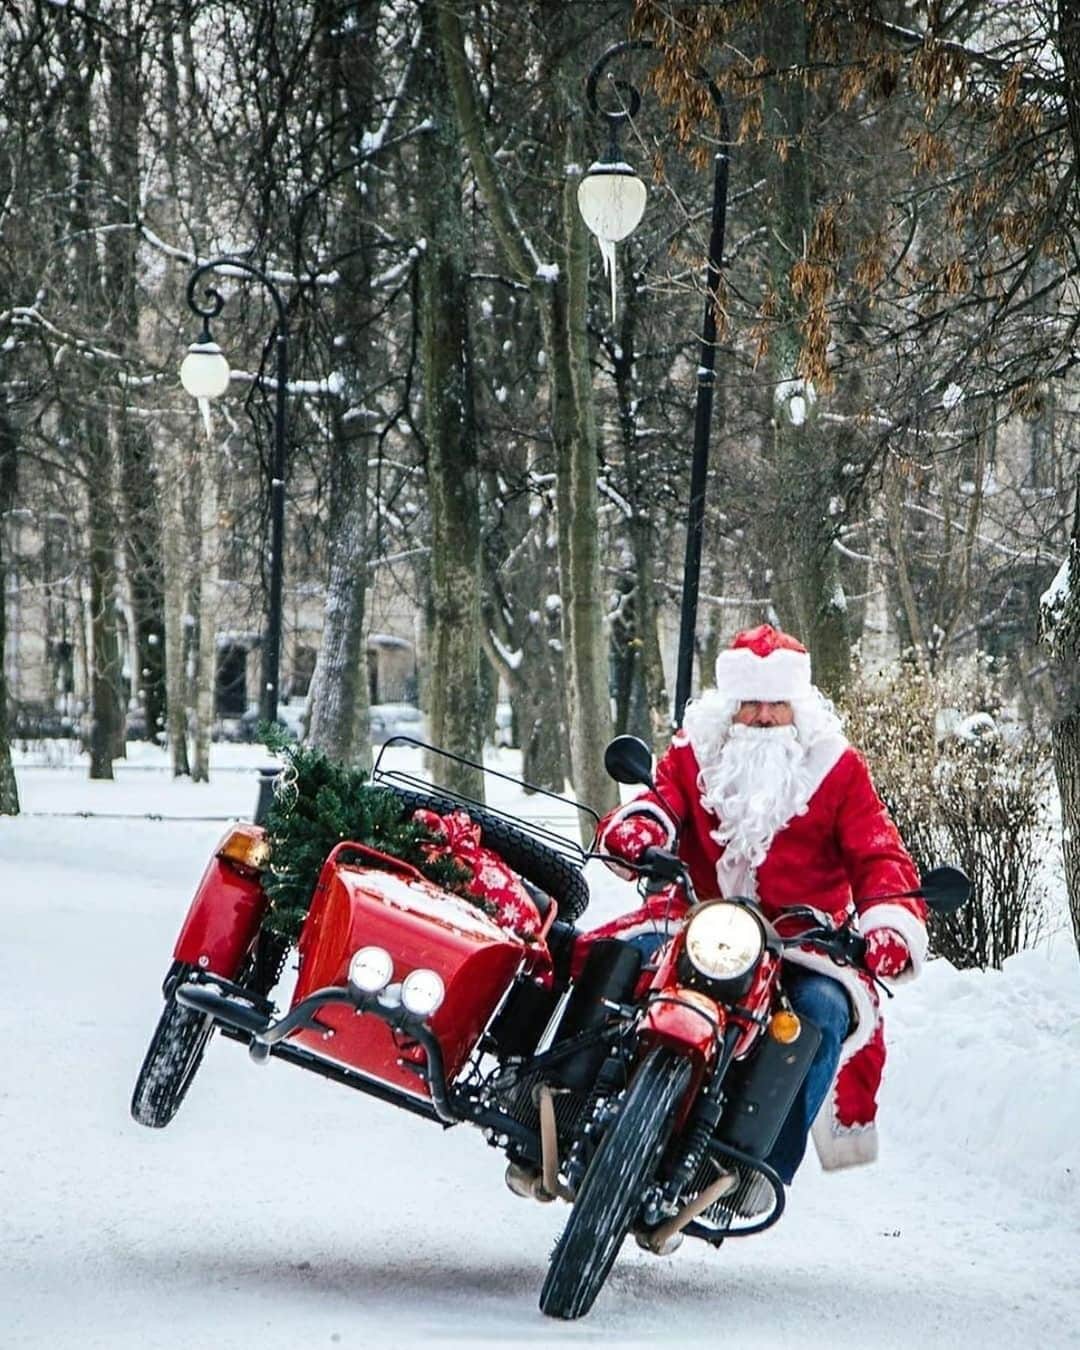 Ural Motorcyclesのインスタグラム：「12月23-24日！ 全国のウラルディーラー店でウラルサイドカーのクリスマスライディングデーを開催します！ ウラルオーナーの人は、ウラルサイドカーの眺めを体験させてあげましょう！  イベントの内容:  - ウラルサイドカー試乗（サイドカー側のみ）  - コーヒー＆ドーナツ  - ウラルグッズSALE  - ウラルサイドカーのユーザーとの交流  - ウラルディーラーのウラルサイドカーの運転講座  - 楽しい時間  - 店舗によりサンタクロースのウラルライドもあります！  詳細、申し込みはプロフィール欄のリンクを！」